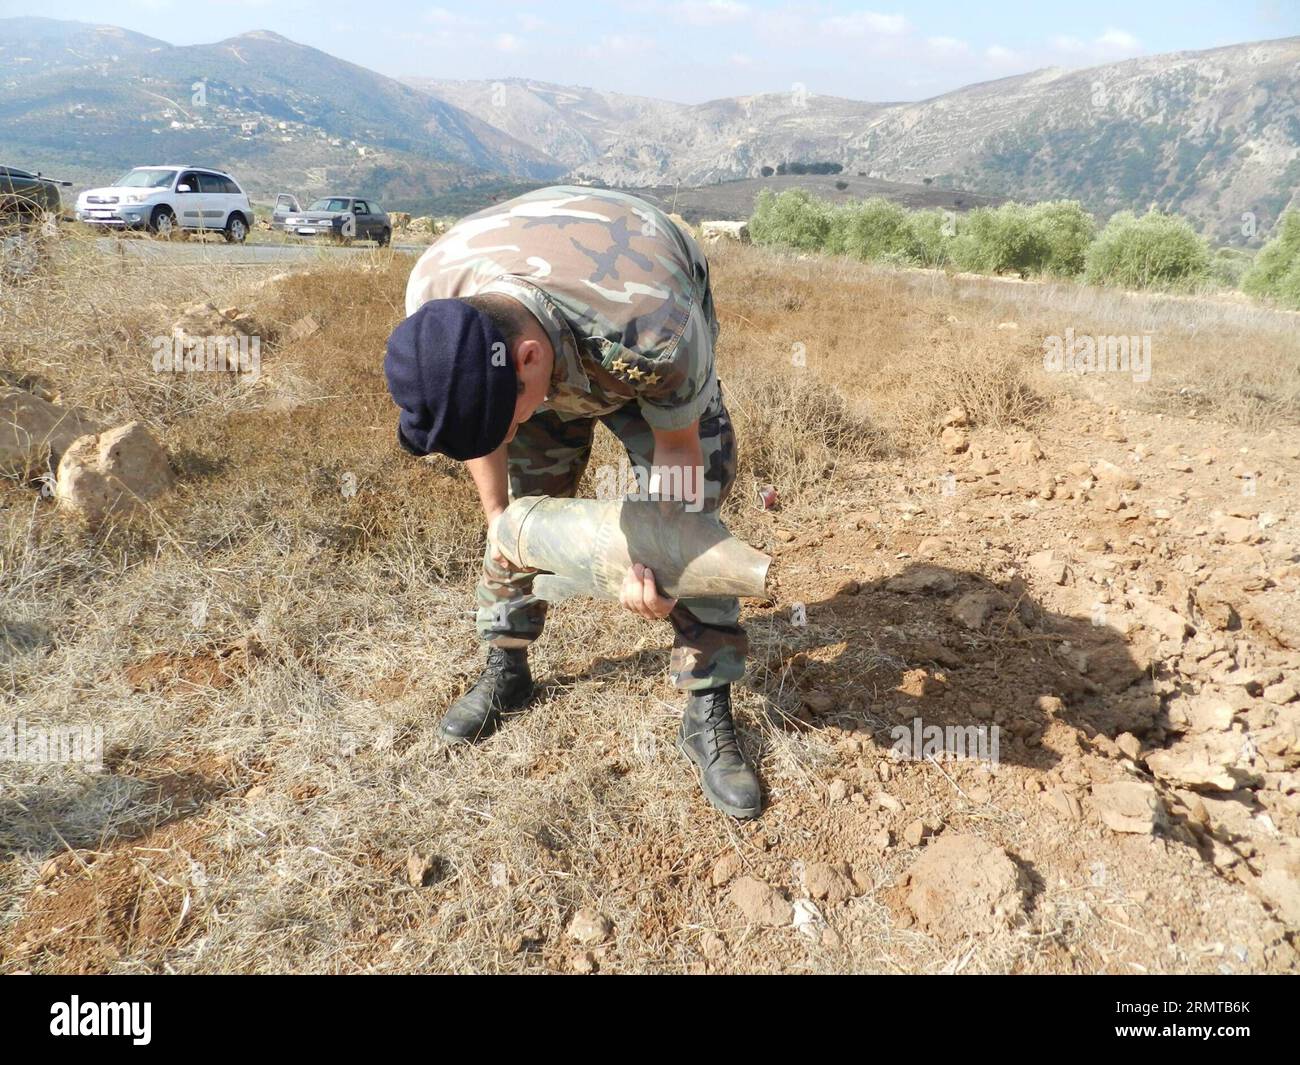 (140826) -- BEIRUT, 26 agosto 2014 -- Un soldato libanese controlla un frammento di conchiglie dopo uno sciopero israeliano, nella valle del fiume Litani, a 10 chilometri dai confini con Israele, 26 agosto 2014. Gli assalitori sconosciuti hanno sparato lunedì sera almeno un razzo dal sud del Libano verso i territori occupati nel nord di Israele. Per rappresaglia, l'artiglieria israeliana sparò diversi proiettili sull'area dove i razzi avevano origine. LIBANO-ISRAELE-RAZZO-ATTACK Taher PUBLICATIONxNOTxINxCHN Beirut agosto 26 2014 un soldato libanese dell'esercito controlla un frammento di Shell dopo lo sciopero israeliano alla Litani R. Foto Stock